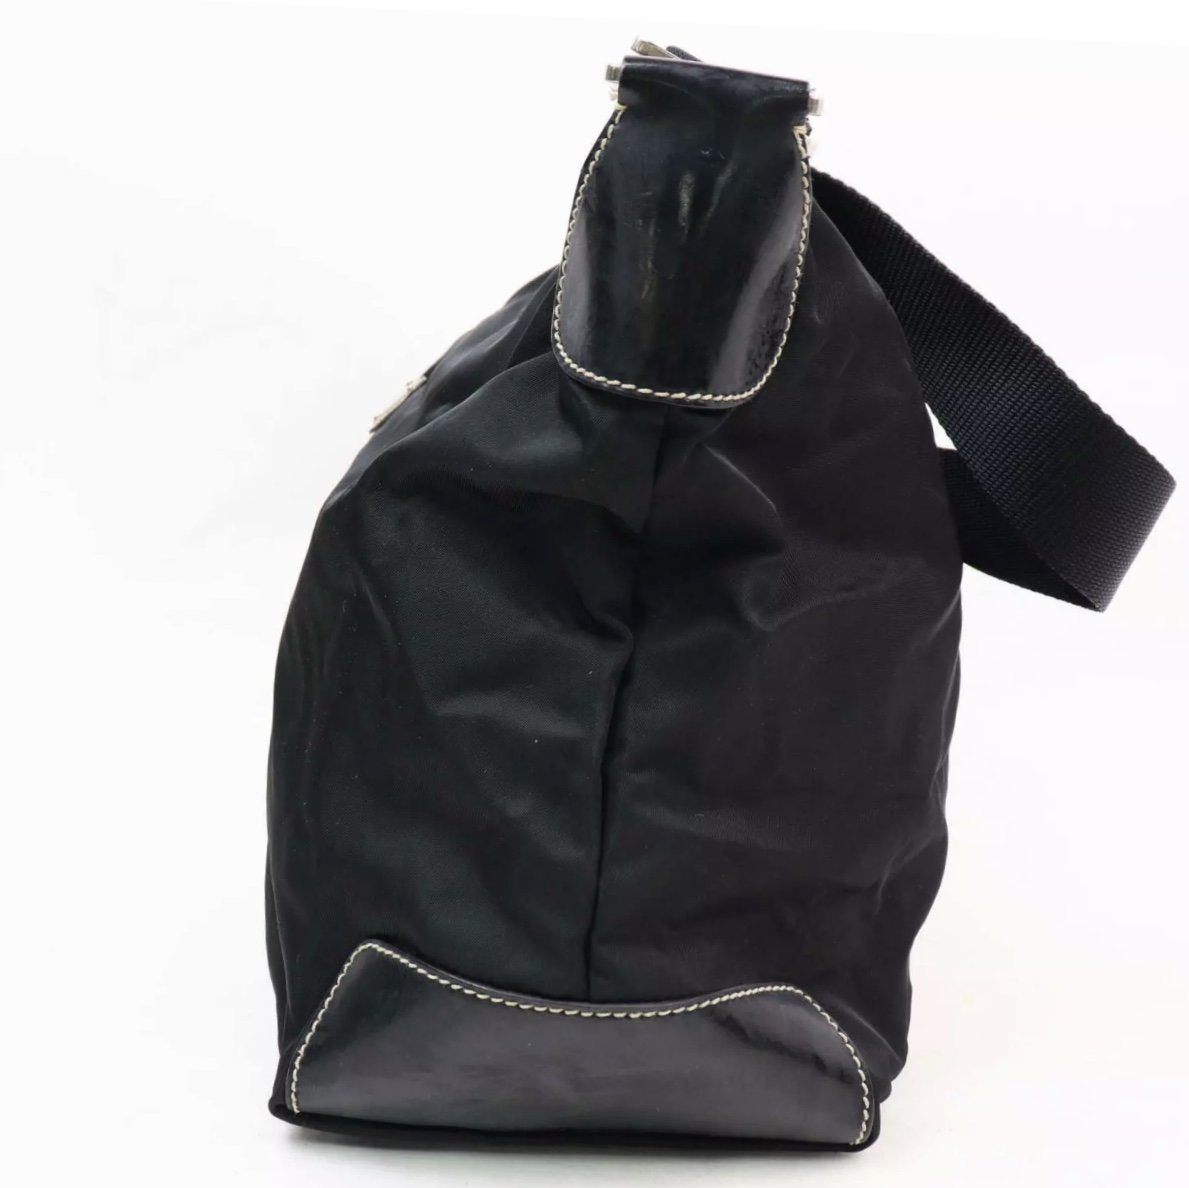 S black nylon tote bag